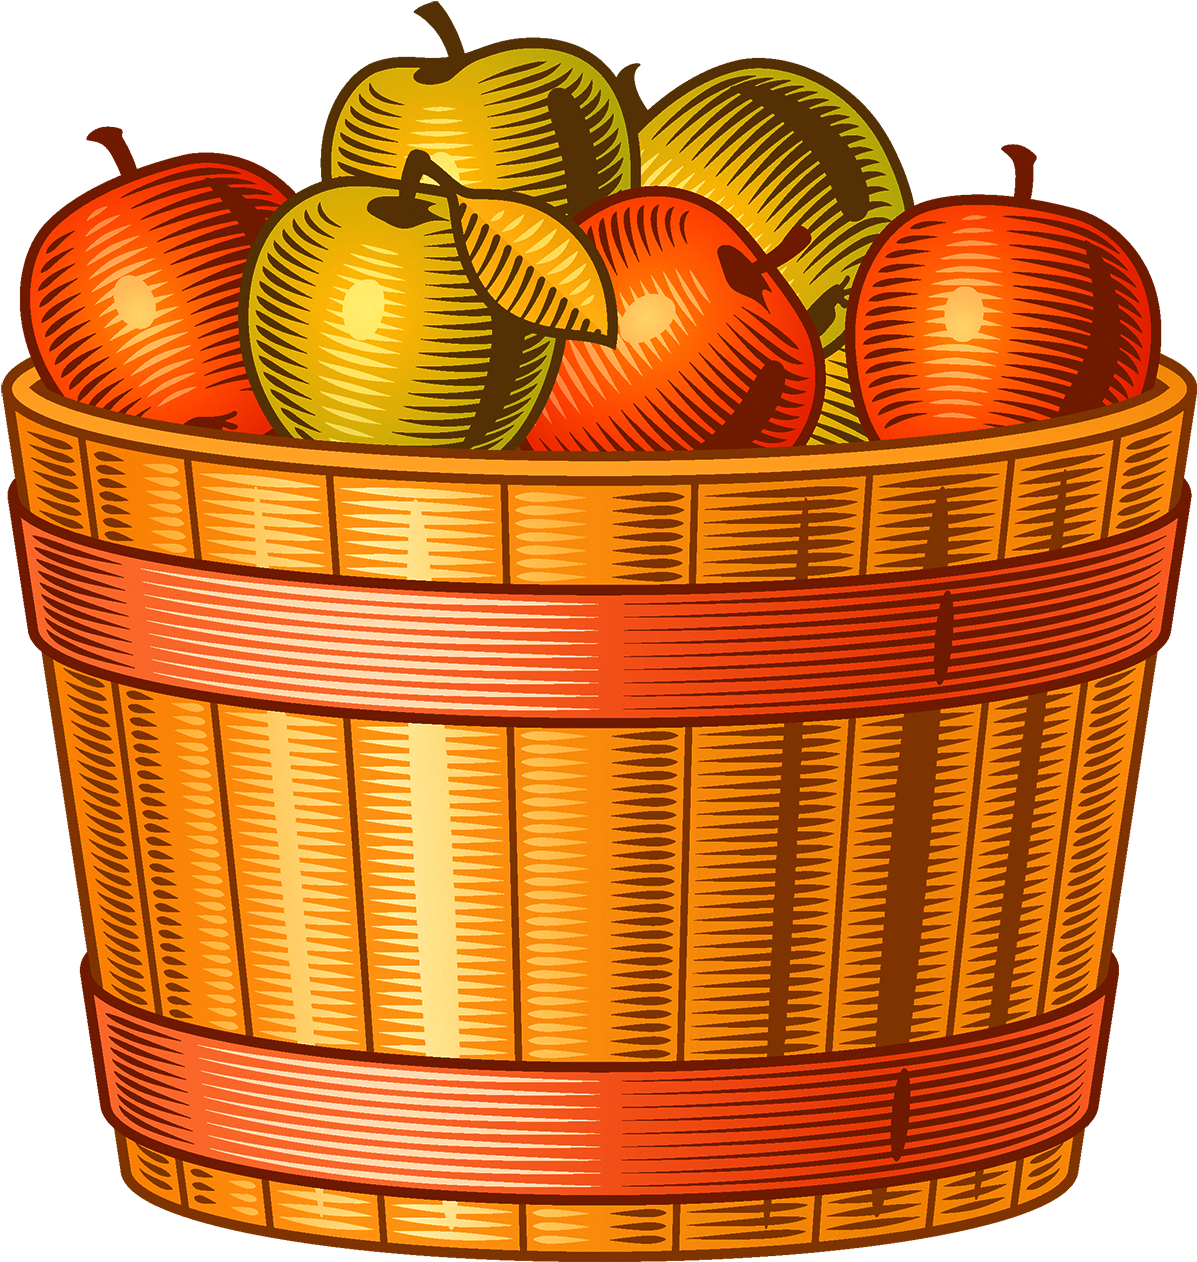 Harvest Autumn Adobe Illustrator - Harvest Autumn Adobe Illustrator (1200x1272)